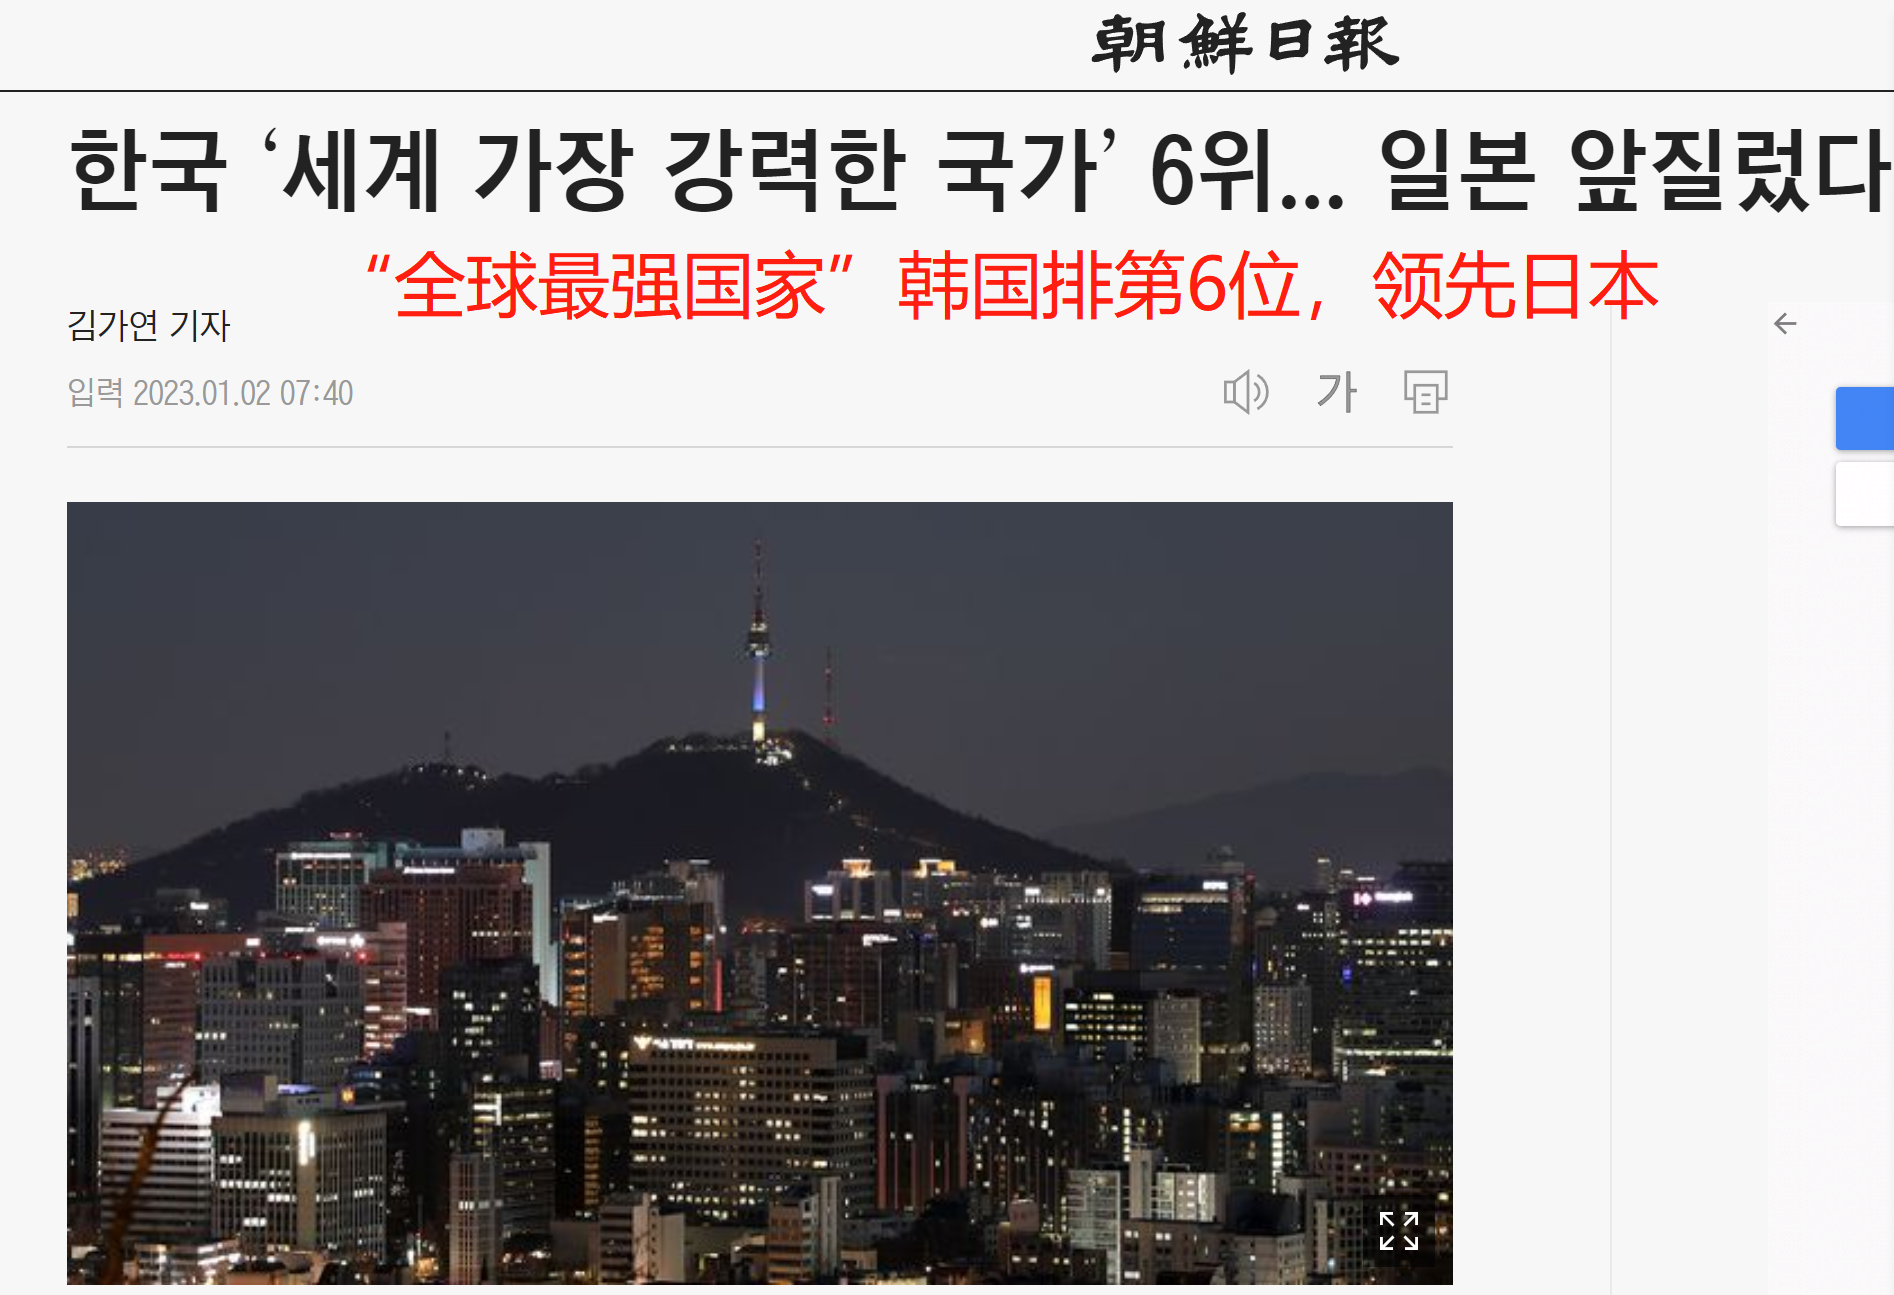 韩国《朝鲜日报》报道截图